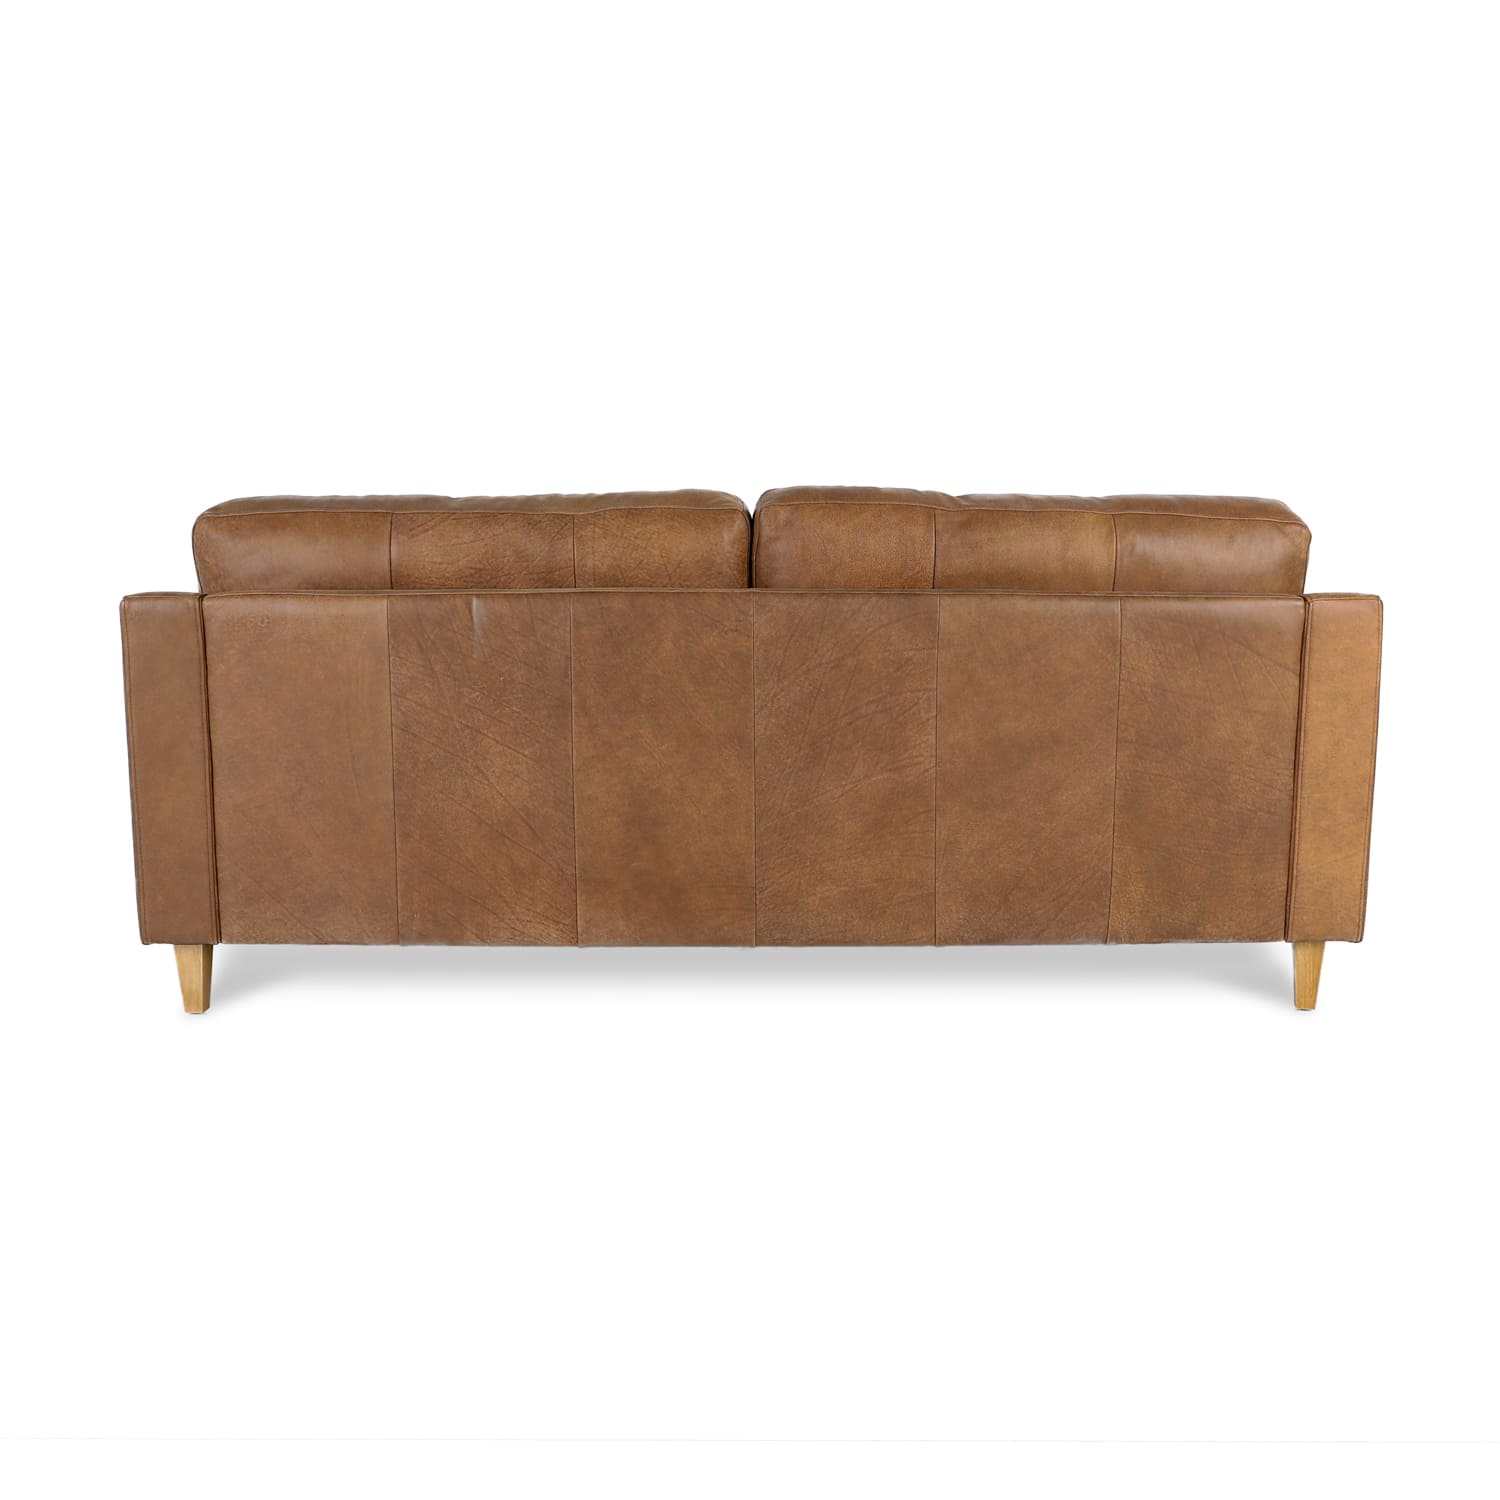 Cara Leather 3 Seat Sofa